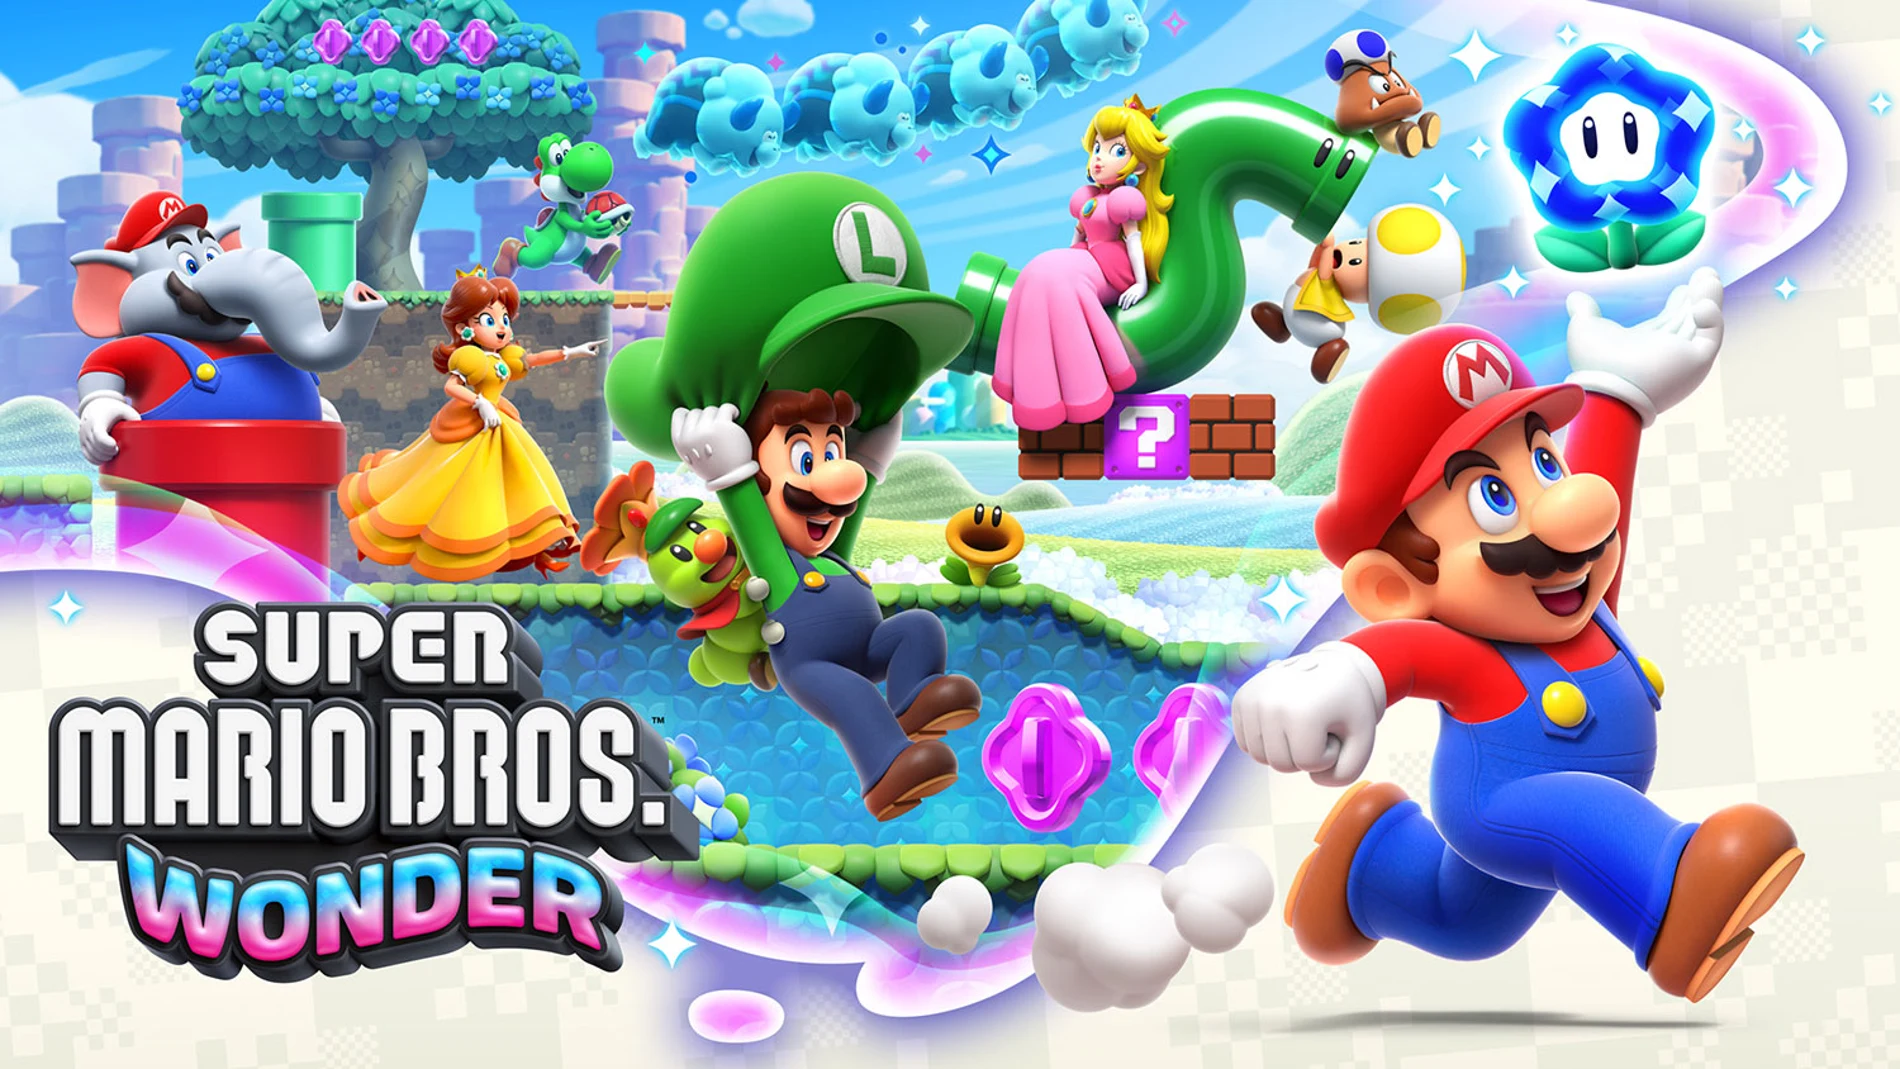 Descubre los nuevos Super Mario Bros. Wonder, Super Mario RPG y muchos juegos más.